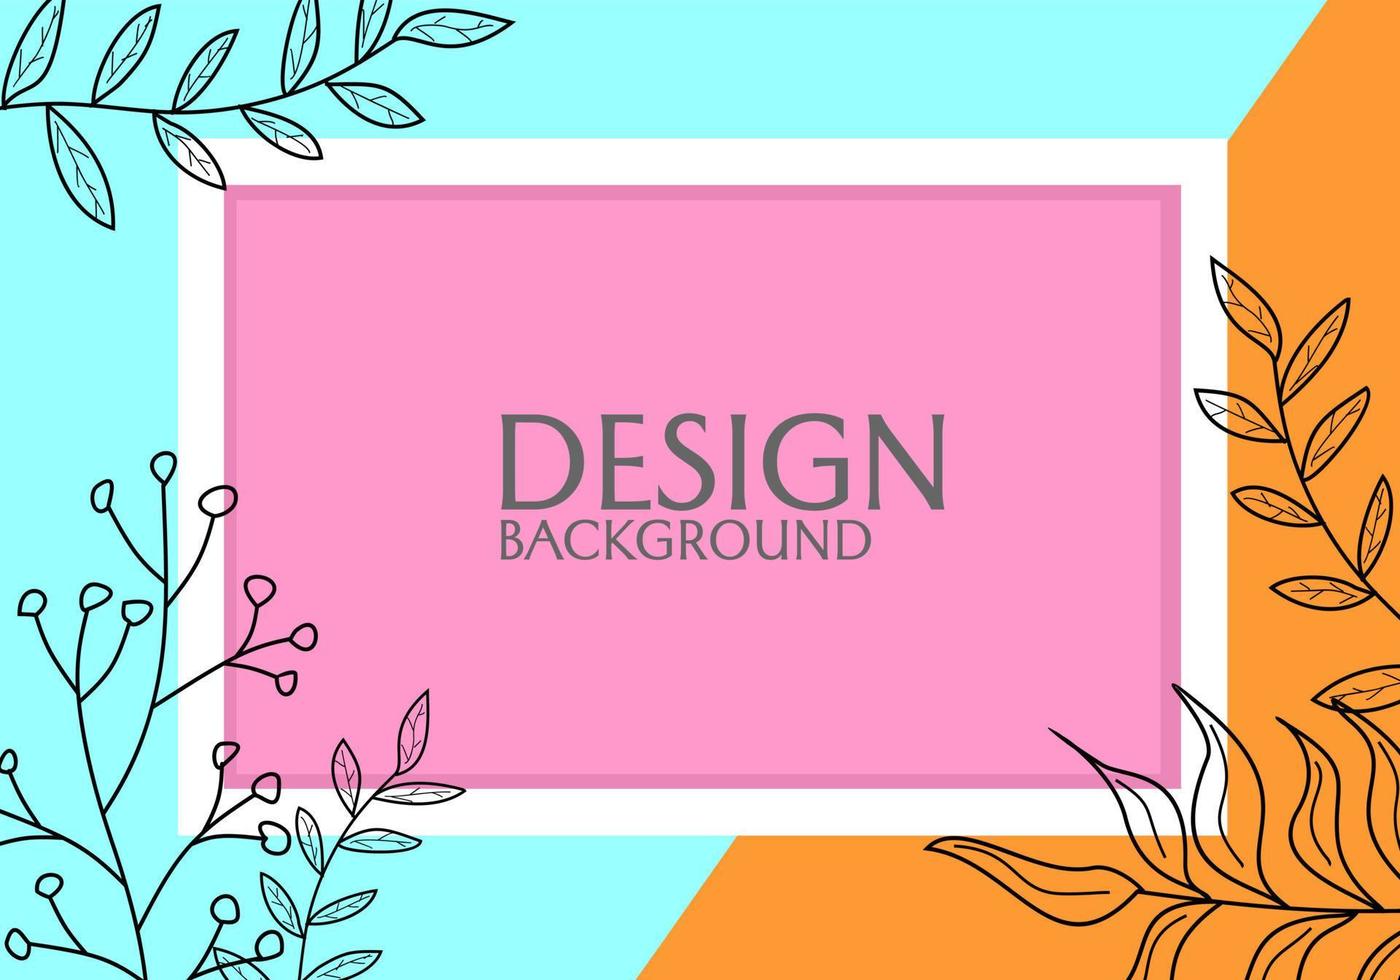 gerahmtes bannerdesign mit handgezeichneten floralen elementen. farbenfrohes abstraktes Design. für Cover, Karten, Poster, Websites vektor